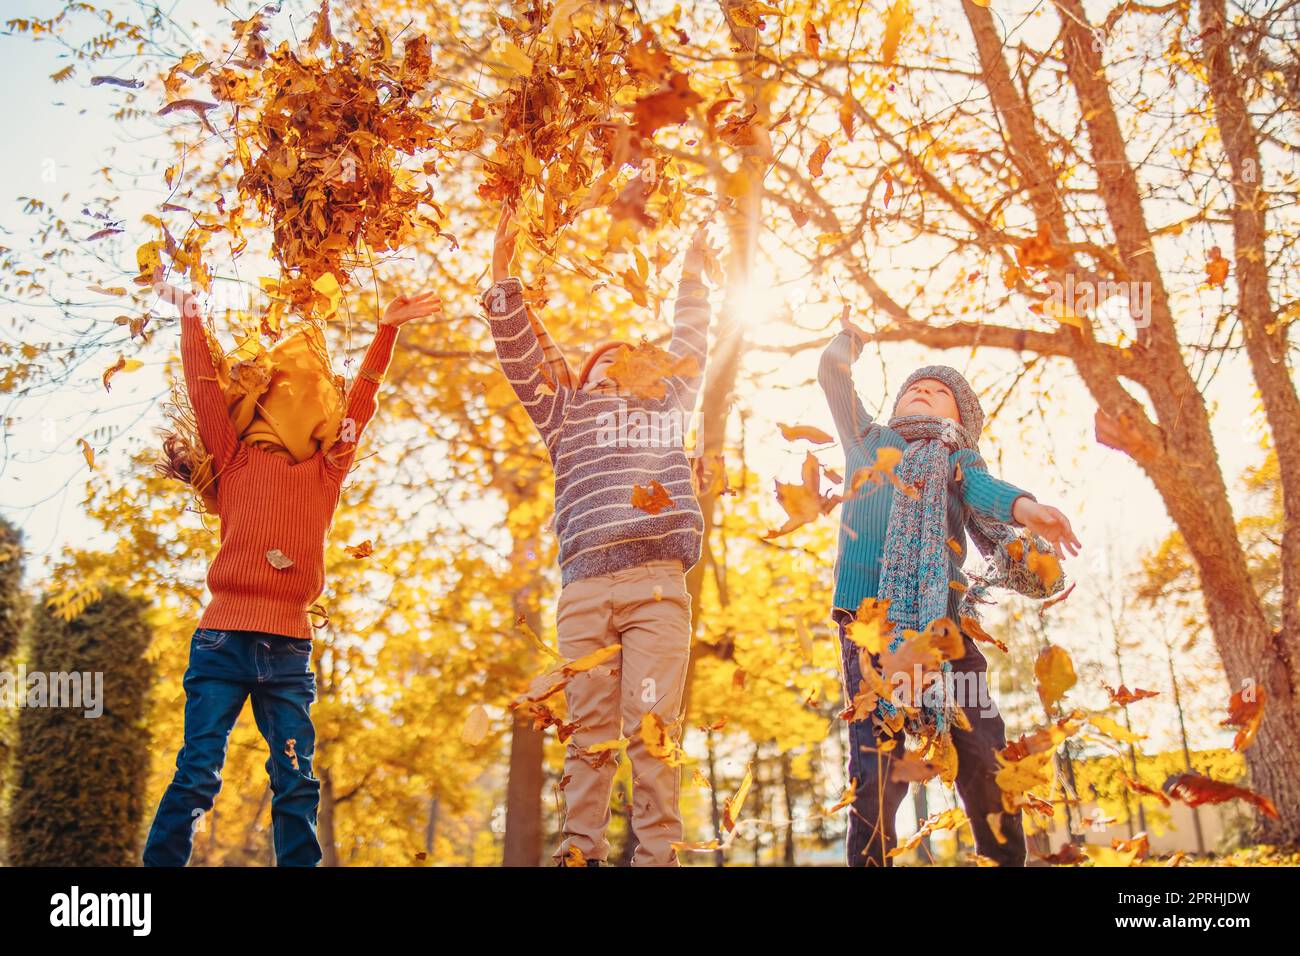 Les enfants jouent ensemble dans un parc naturel coloré par jour d'automne Banque D'Images